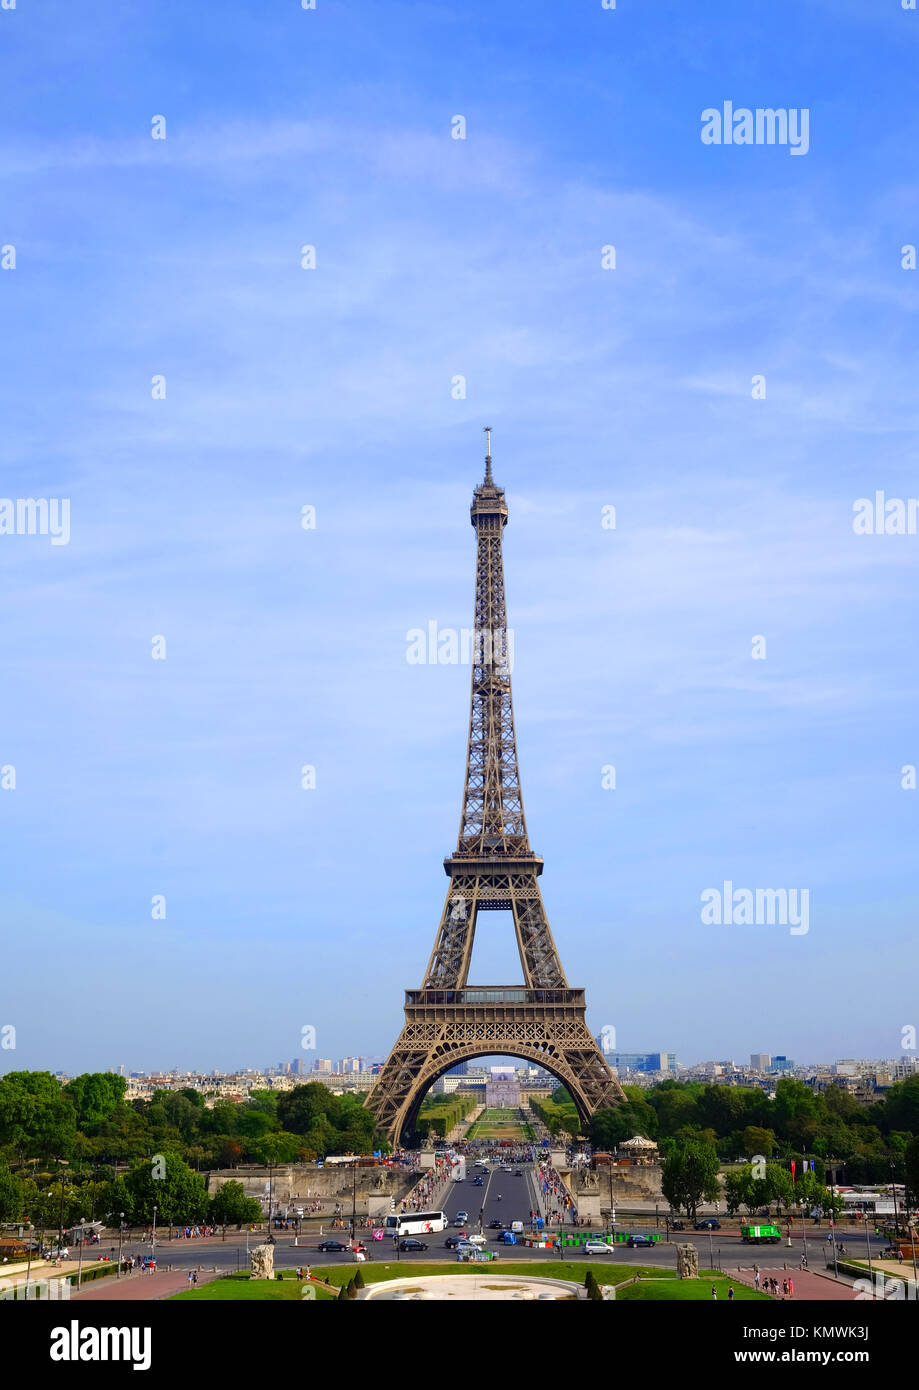 Le symbole de la France et de Paris, la Tour Eiffel par une chaude journée d'été Banque D'Images